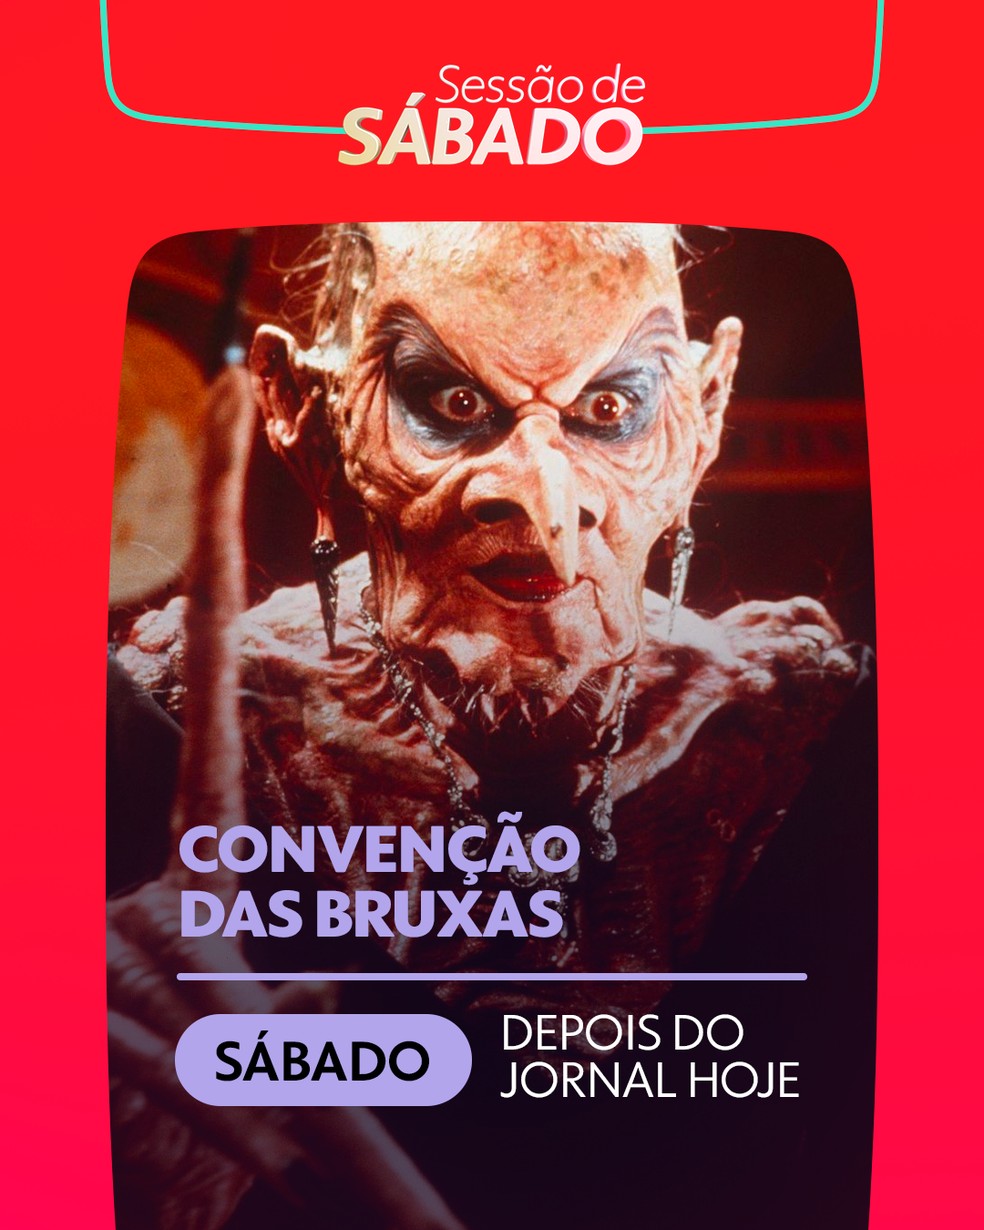 Globo anuncia filme da Sessão da Tarde do dia do Halloween